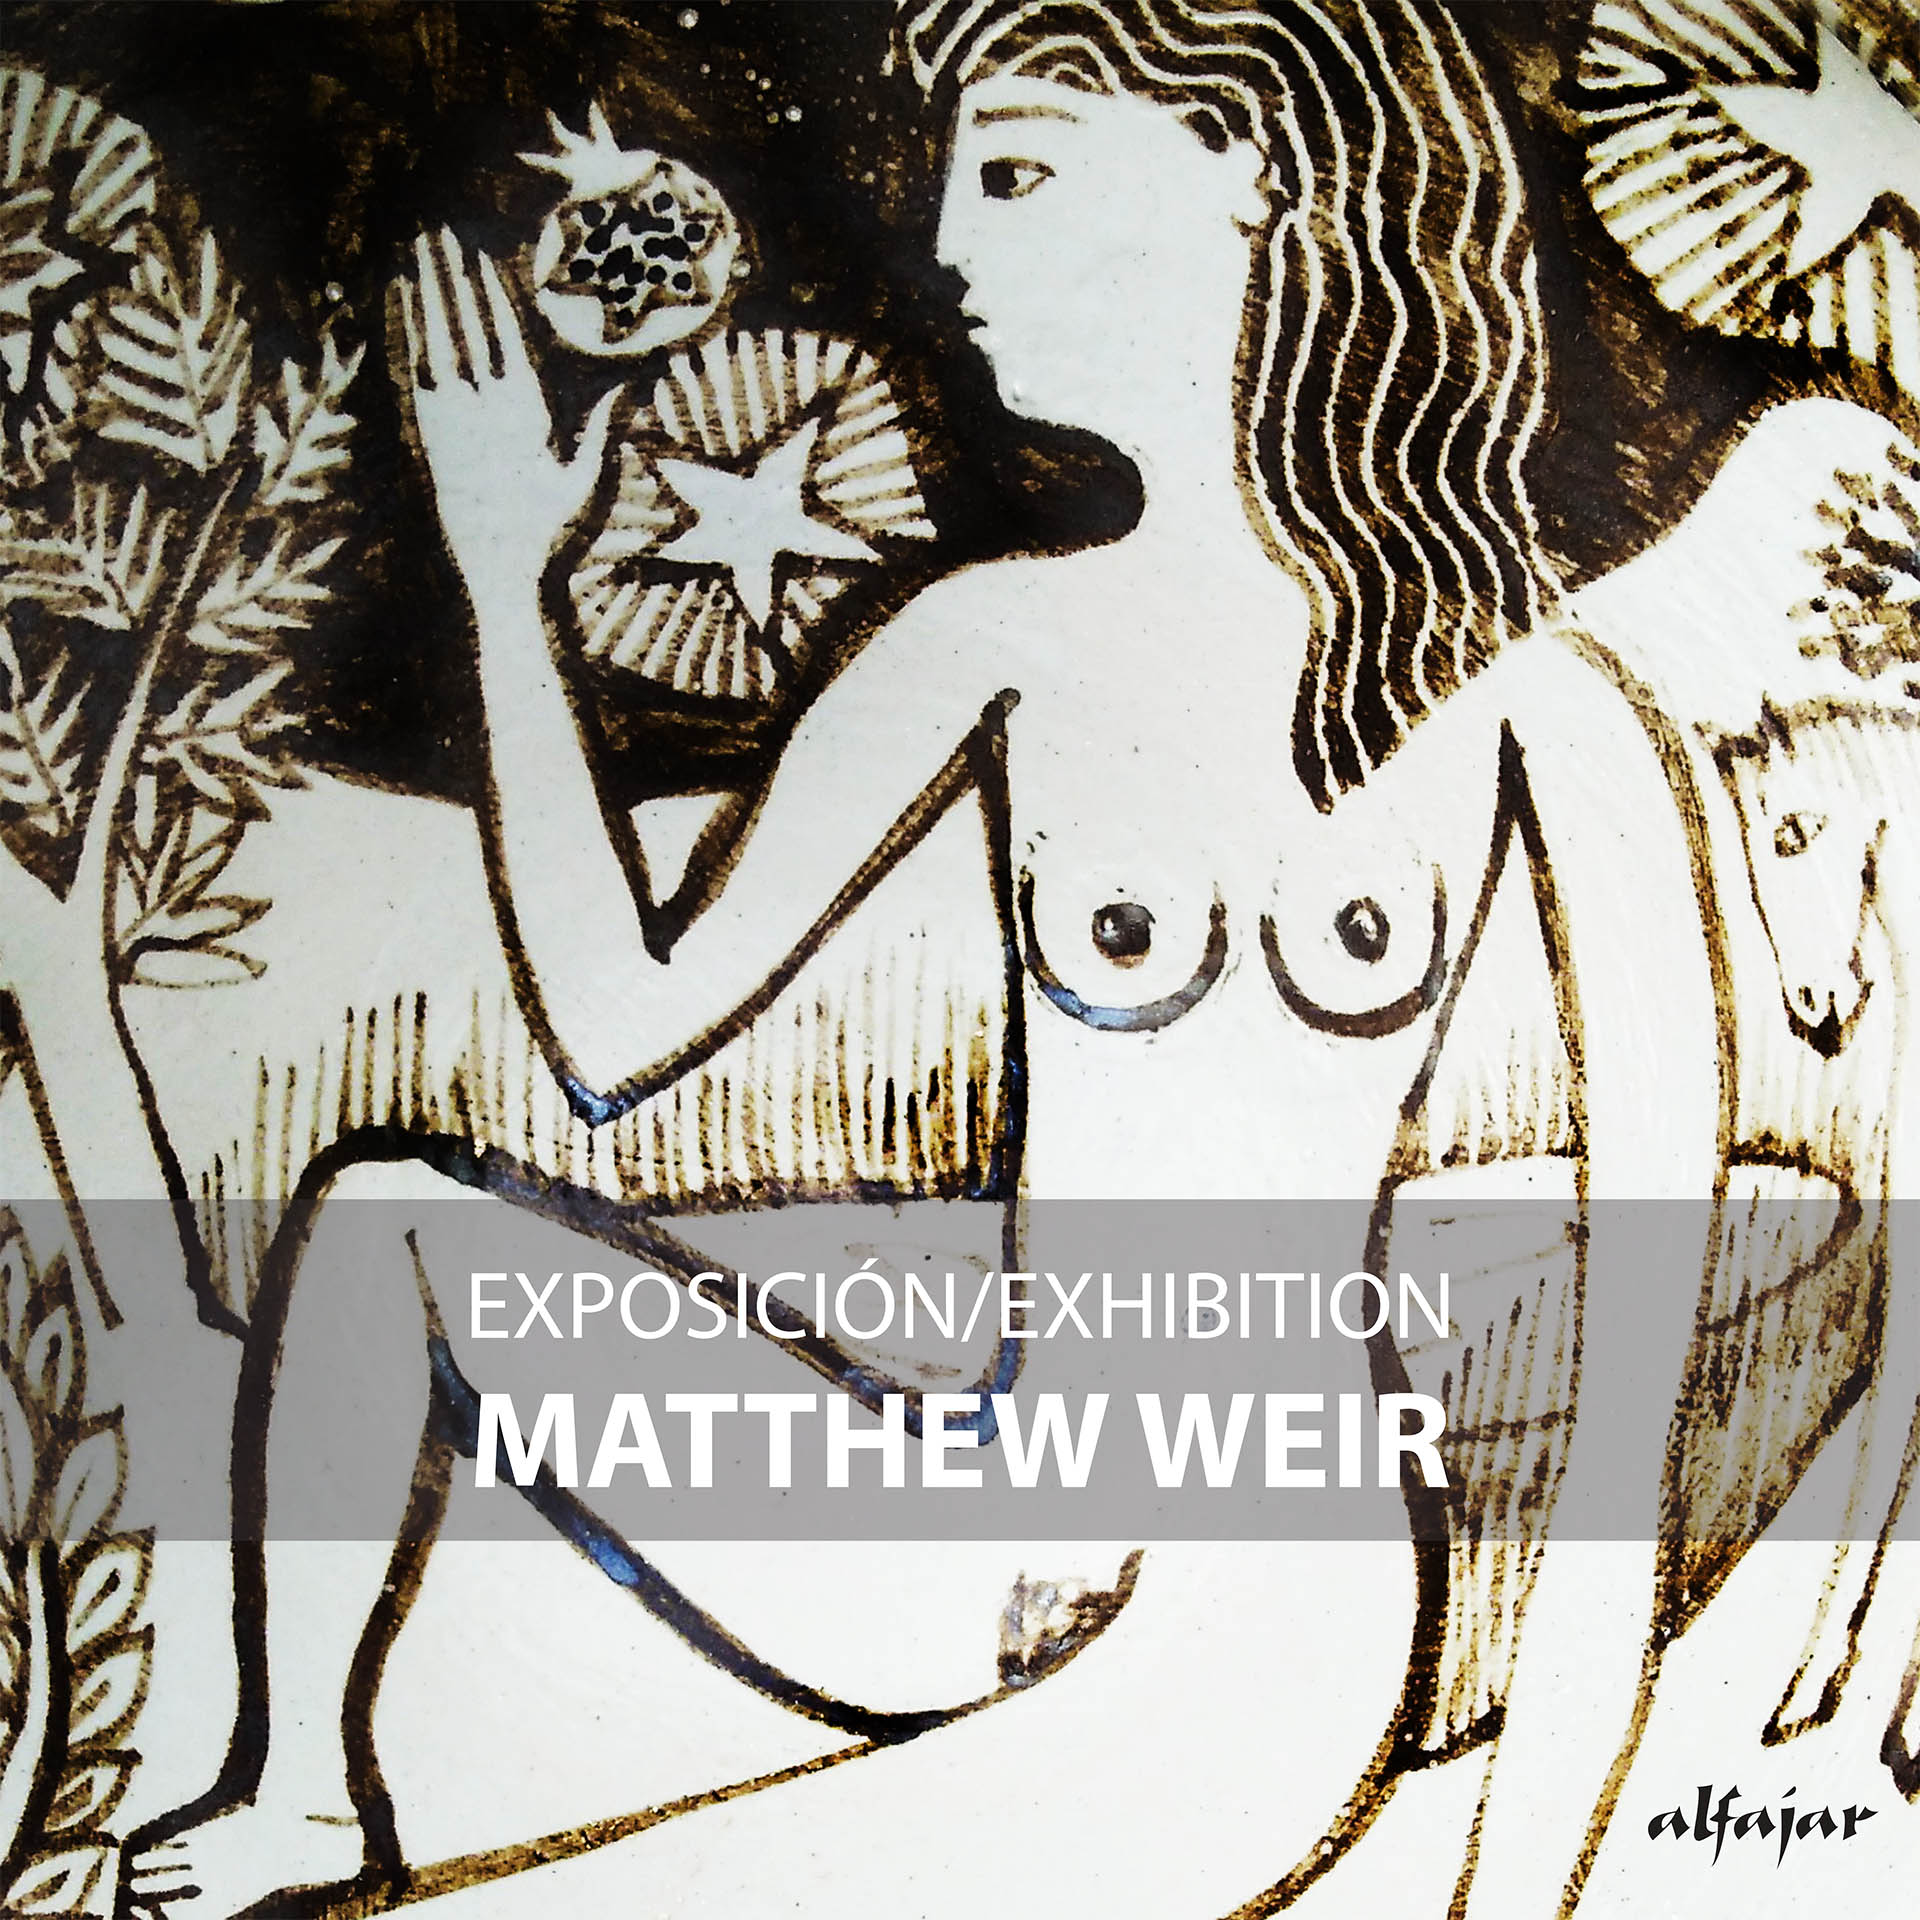 Matthew Weir